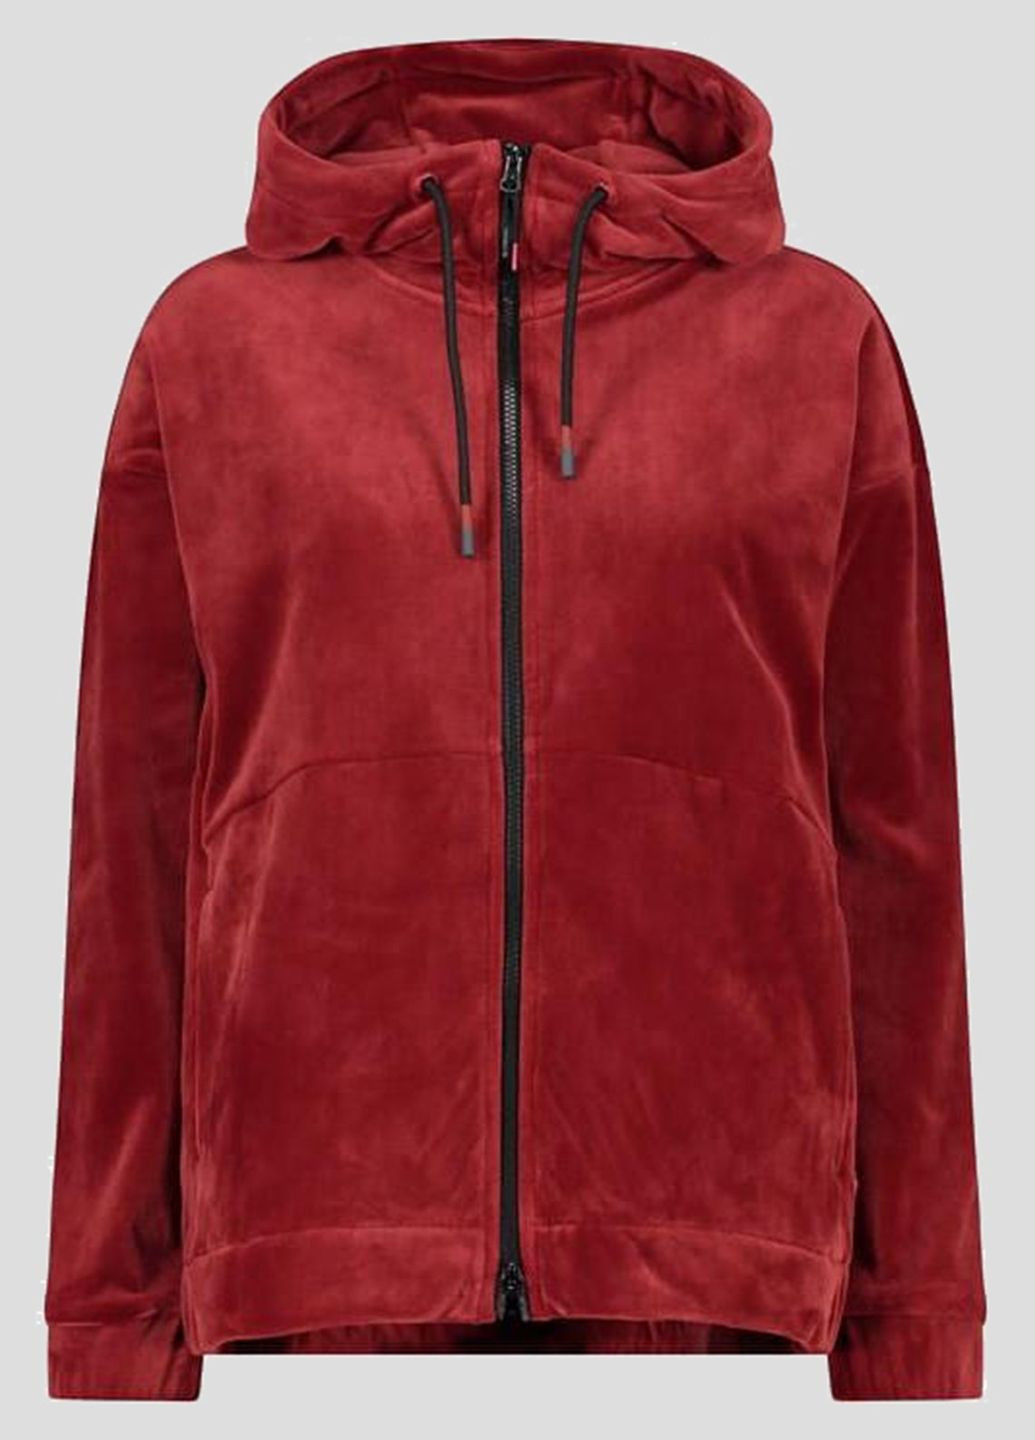 Бордовая спортивная кофта Woman Jacket Fix Hood CMP (260394592)